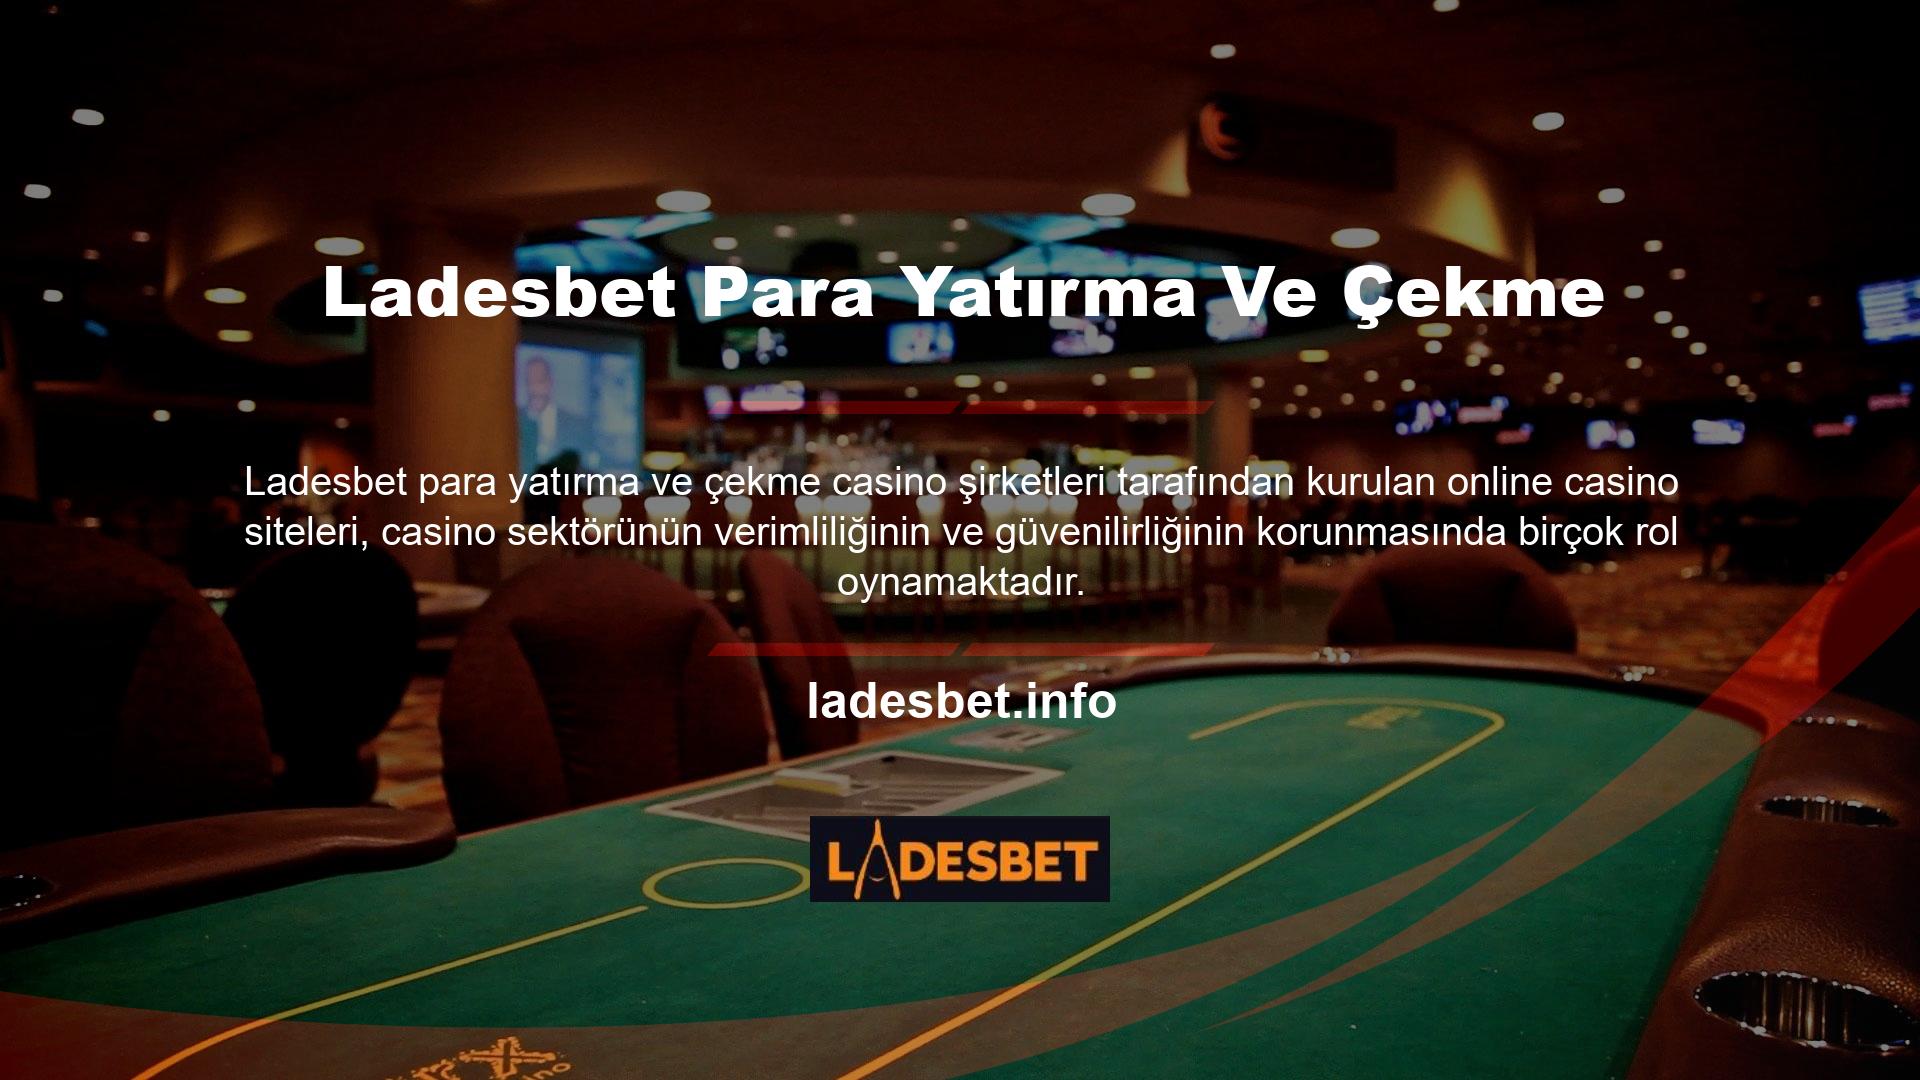 Şirket ayrıca, Ladesbet Türk casino yasalarının gerektirdiği koşulları karşılamayan yabancı casino web sitelerine hizmet vermesini engellemek amacıyla para yatırma ve çekme işlemleri için internet erişimini engelleyerek Türk casino pazarına girdi